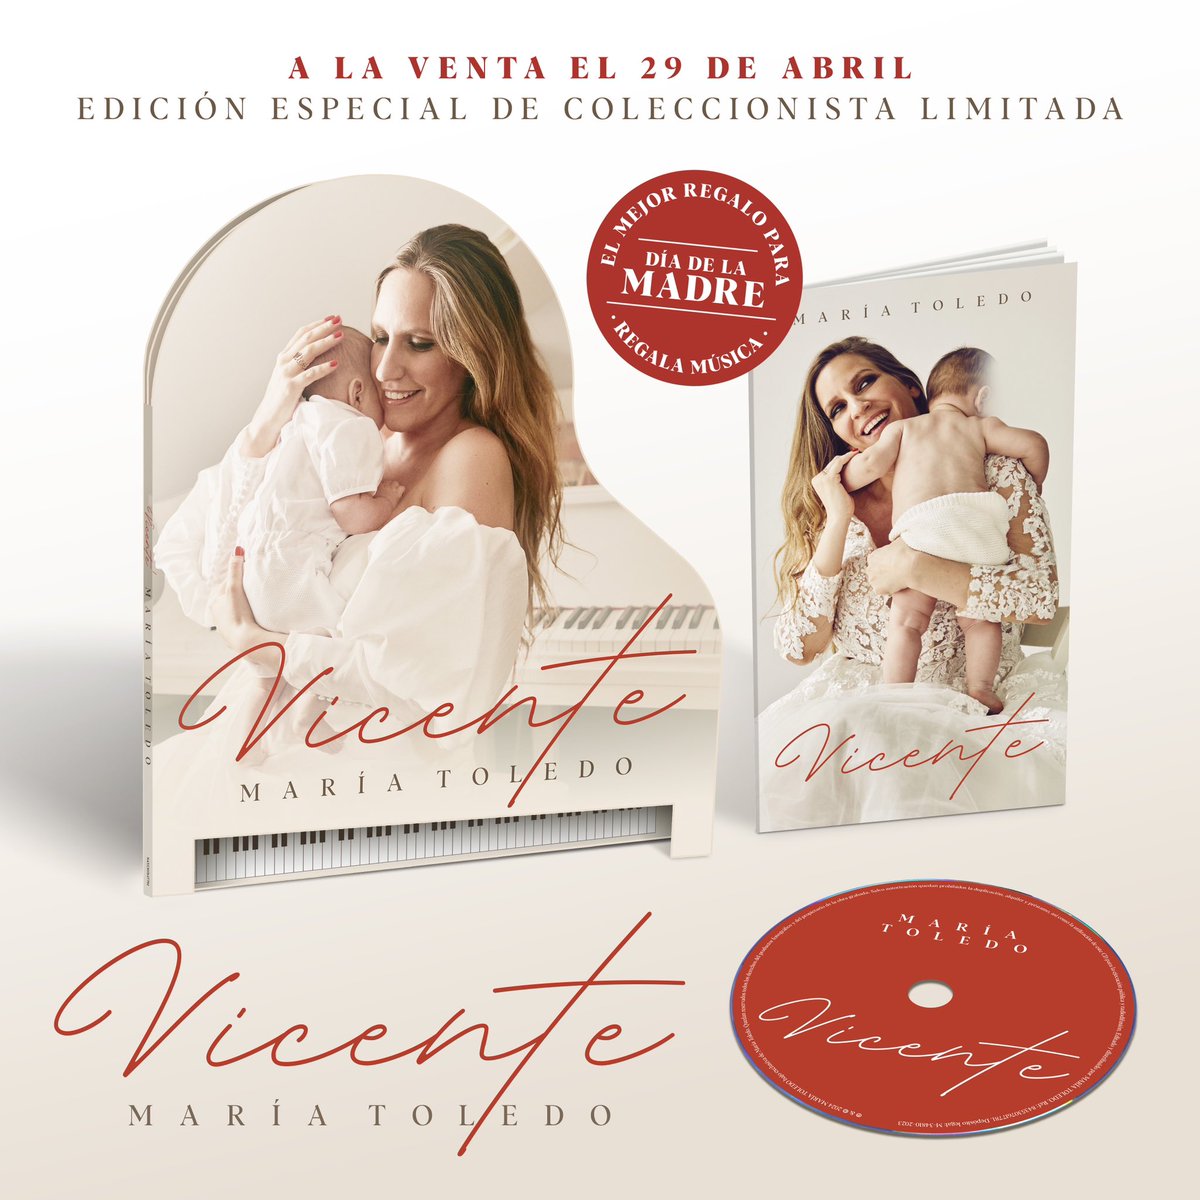 🤱 Mi nuevo disco #Vicente sale de forma física el próximo 29 de abril, para que tengáis un regalo especial para el Día de la Madre. 
Una edición exclusiva que ya mismo estará en vuestras manos y en la de vuestras madres. 🙌 ❤️

#DíadelaMadre #nuevodisco #contodomiamor #parati